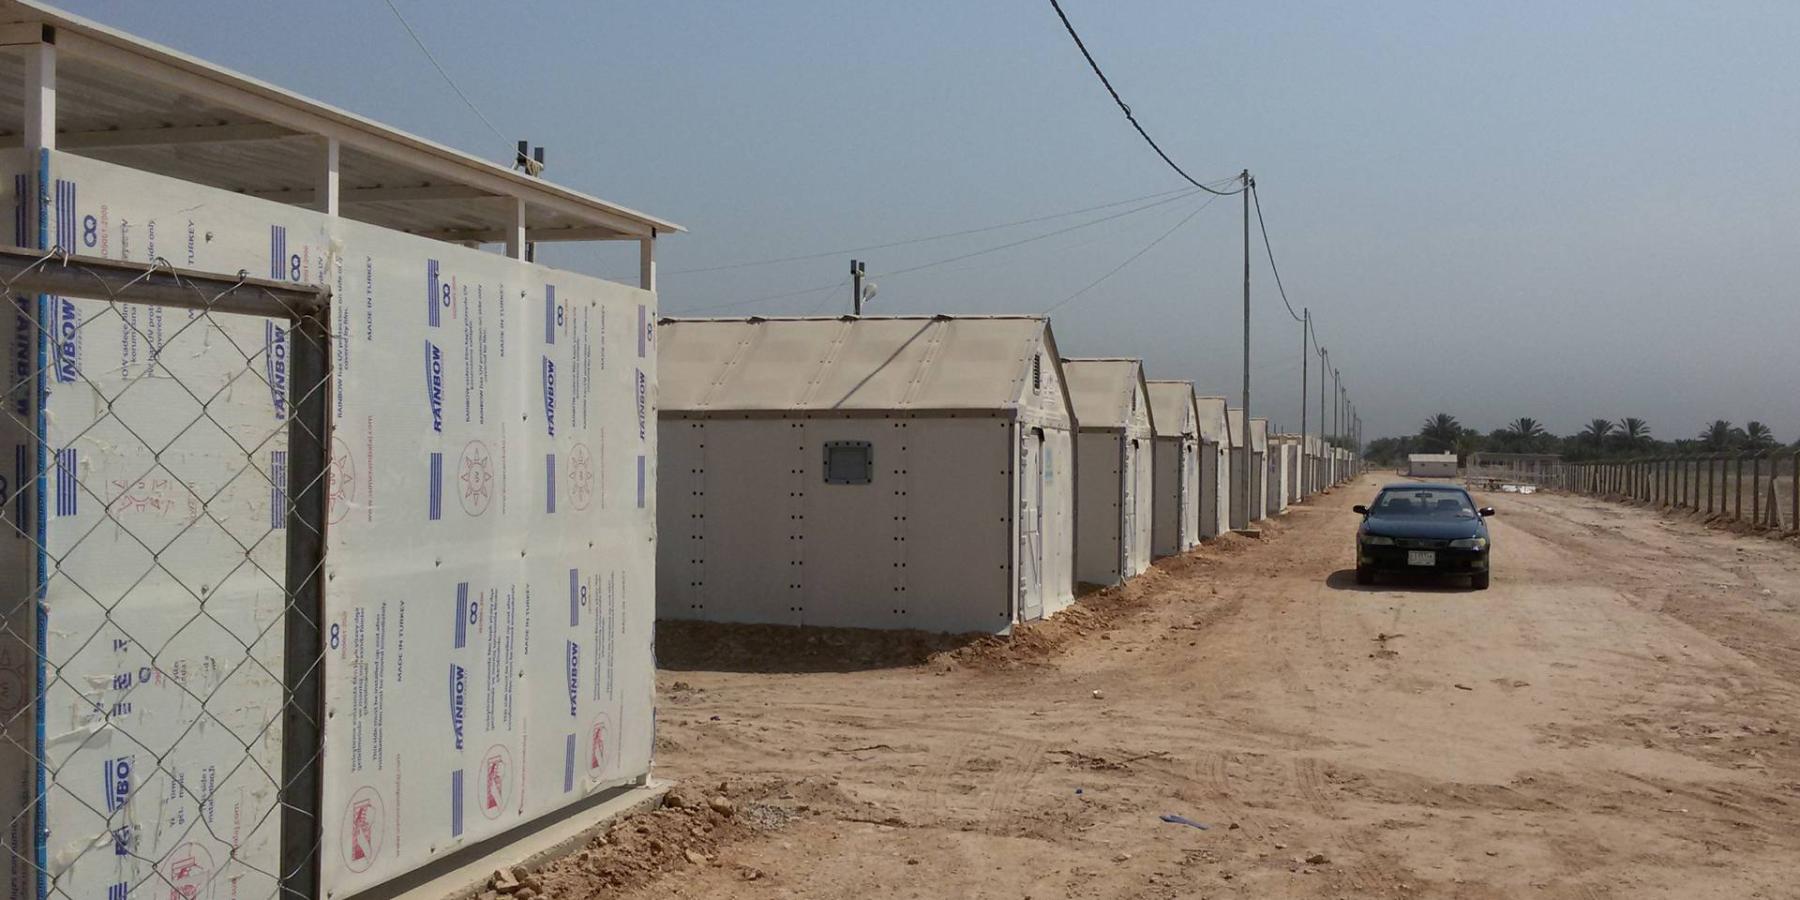 الأمانة العامة للعتبة العلوية المقدسة تقوم بإكمال نواقص مشروع بناء 100 وحدة سكنية للنازحين بالتعاون مع منظمة الأمم المتحدة (UNHCR)